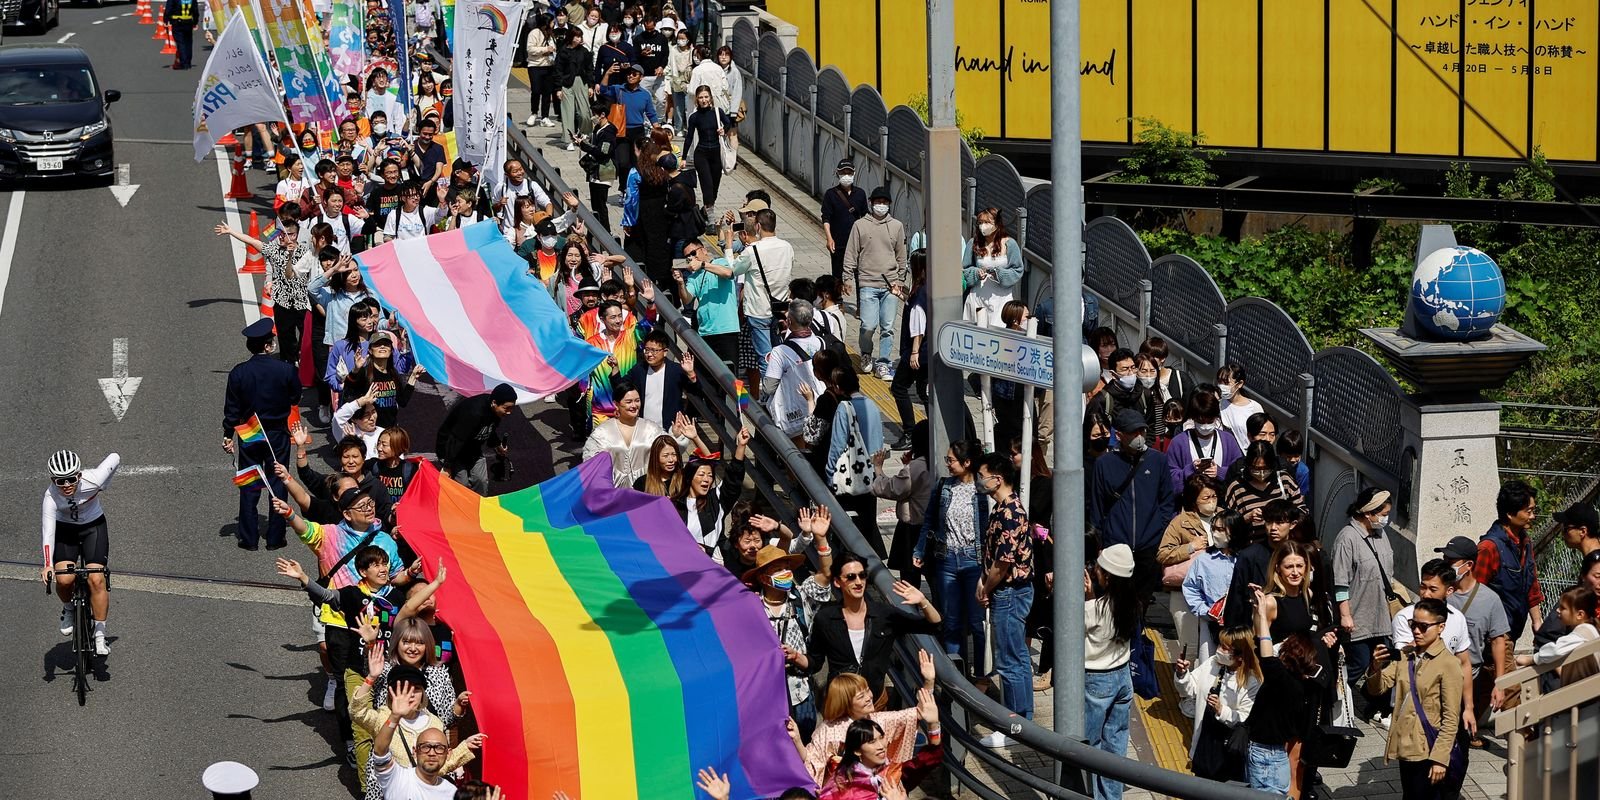 Proibir casamento homoafetivo é inconstitucional, diz tribunal japonês